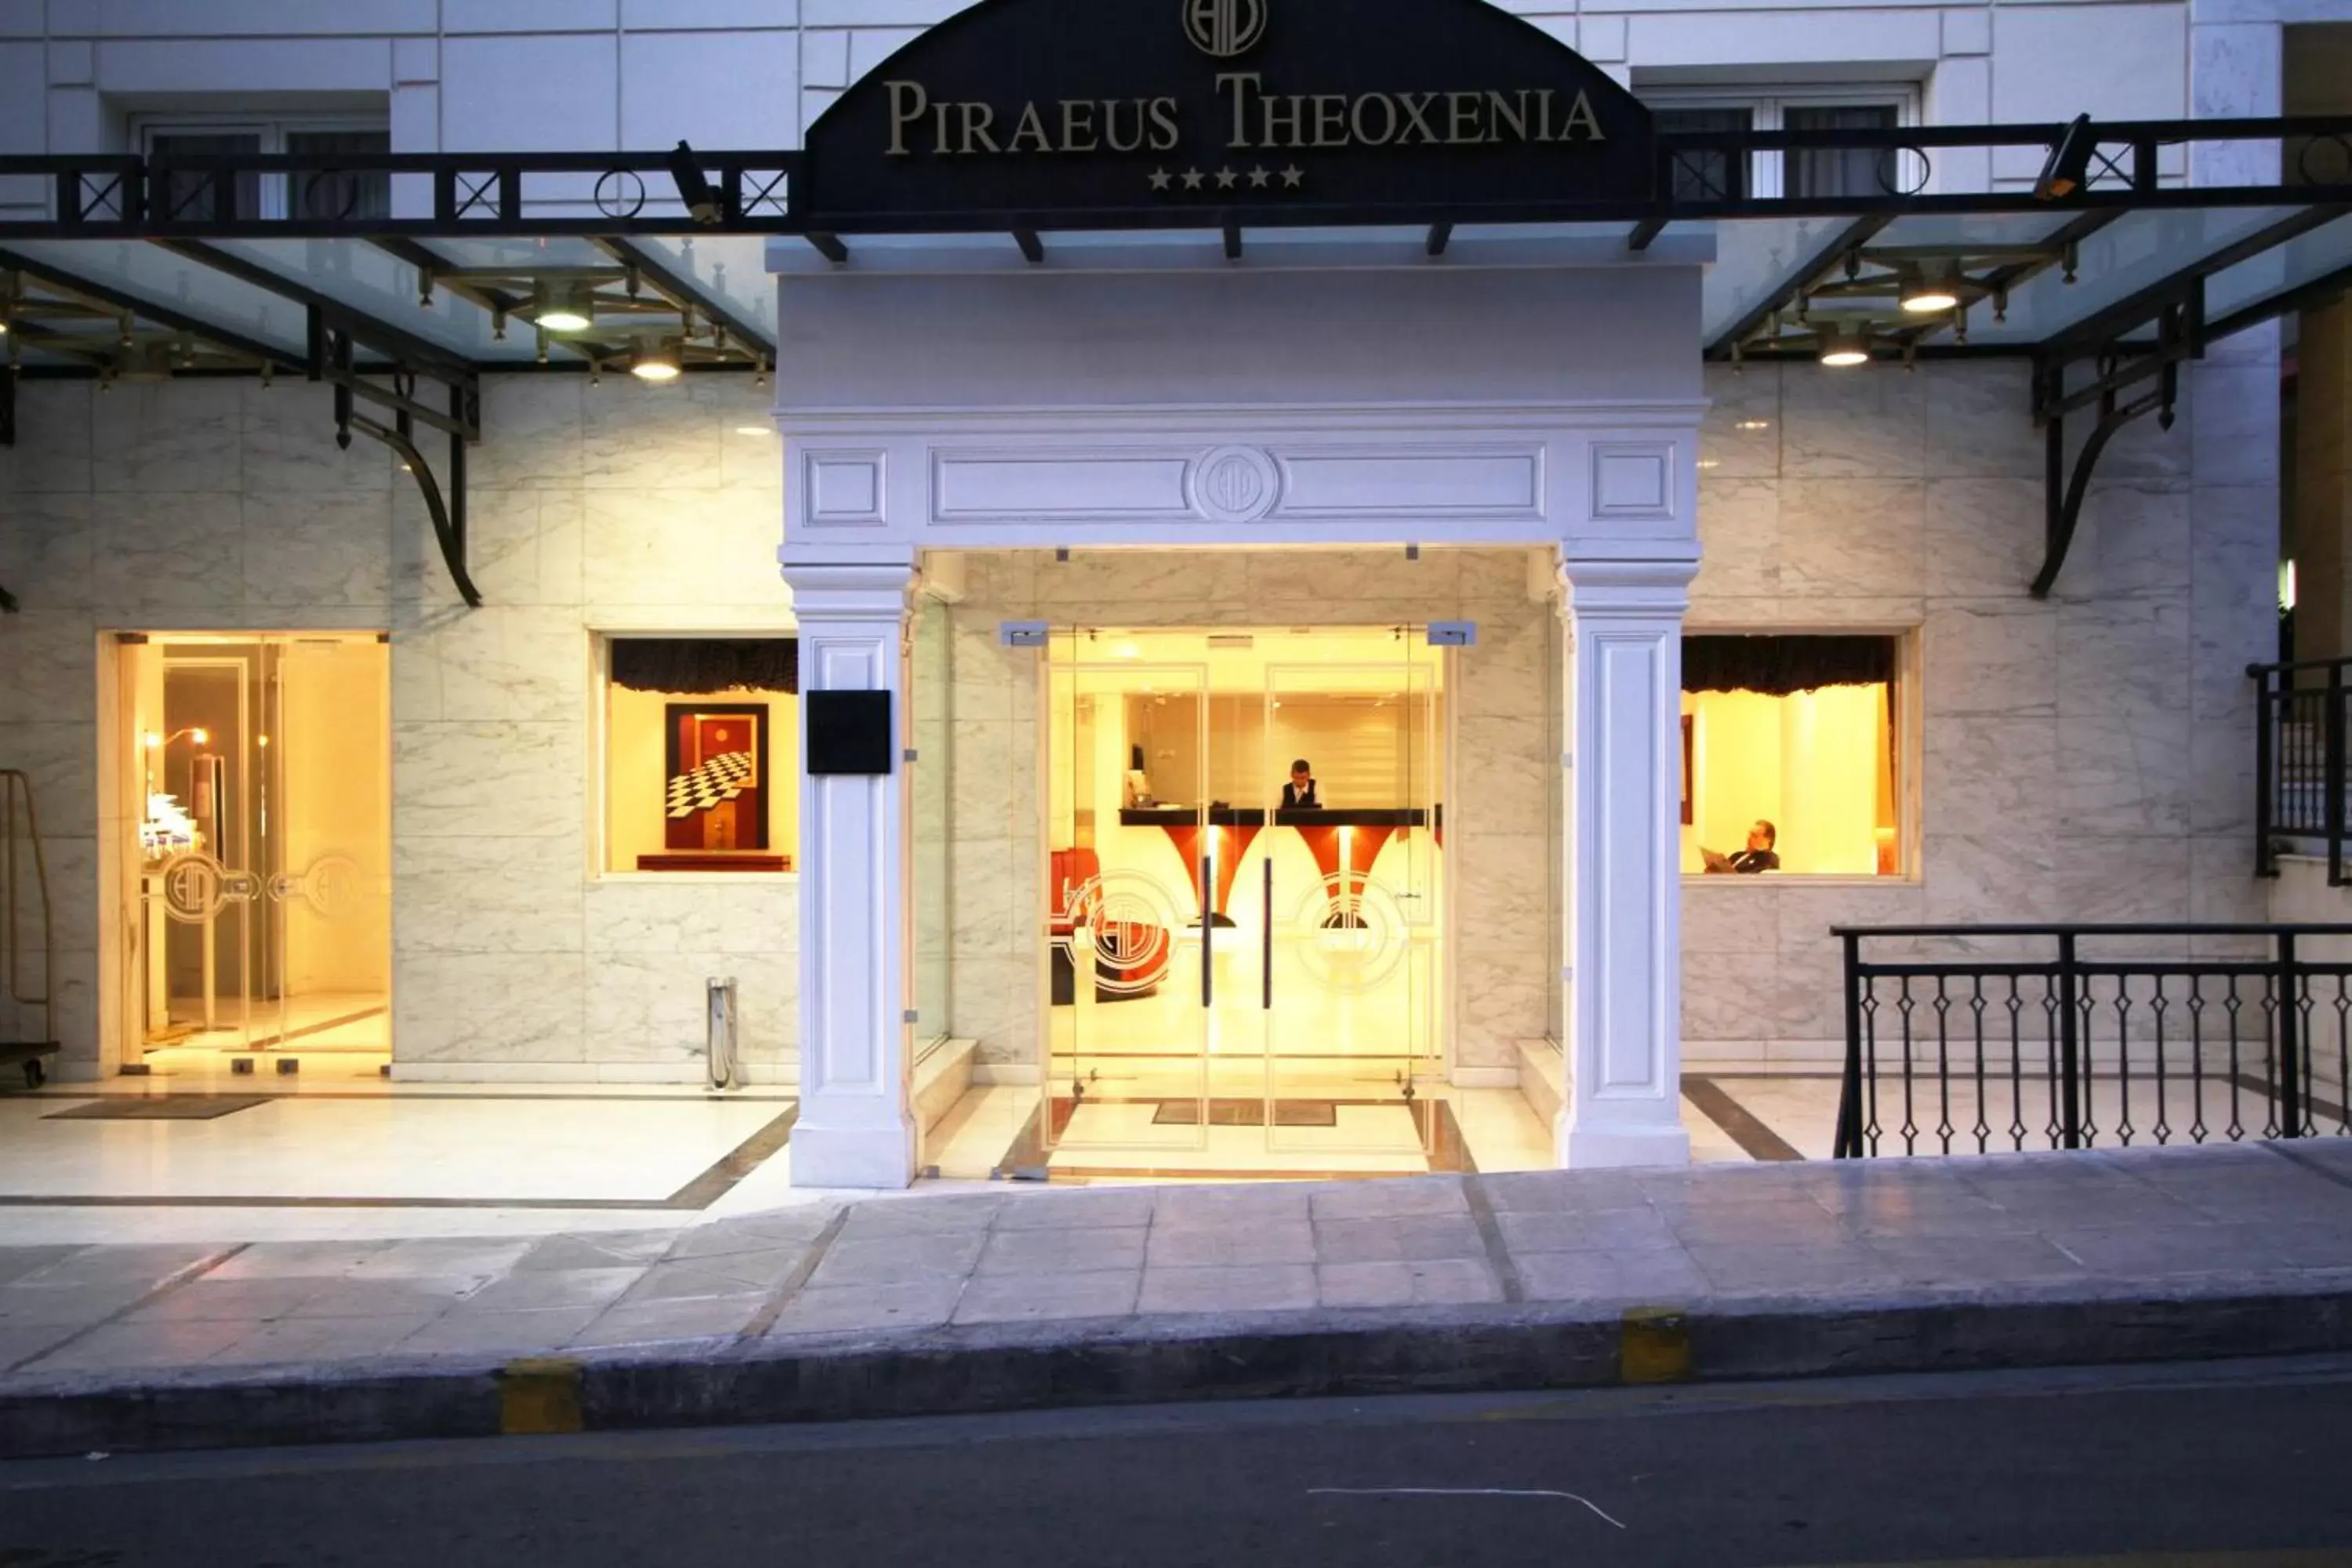 Facade/entrance in Piraeus Theoxenia Hotel